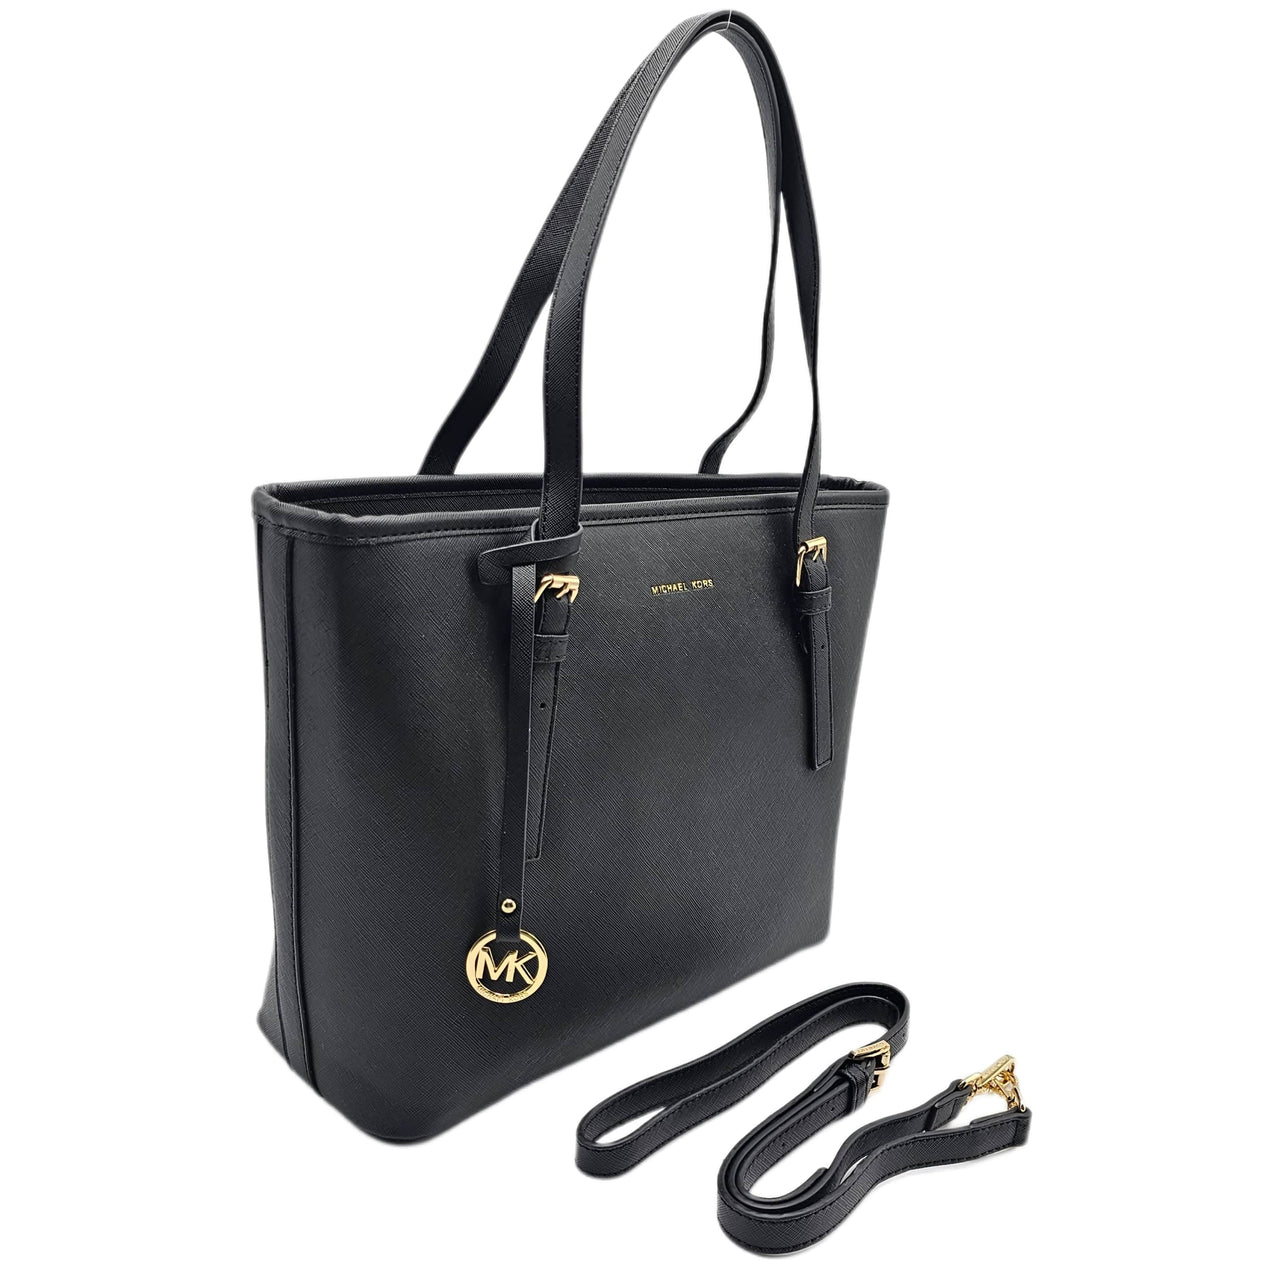 The Bag Couture Handbags, Wallets & Cases Michael Kors Jet Set Travel Carryall Tote / Shoulder Bag Black